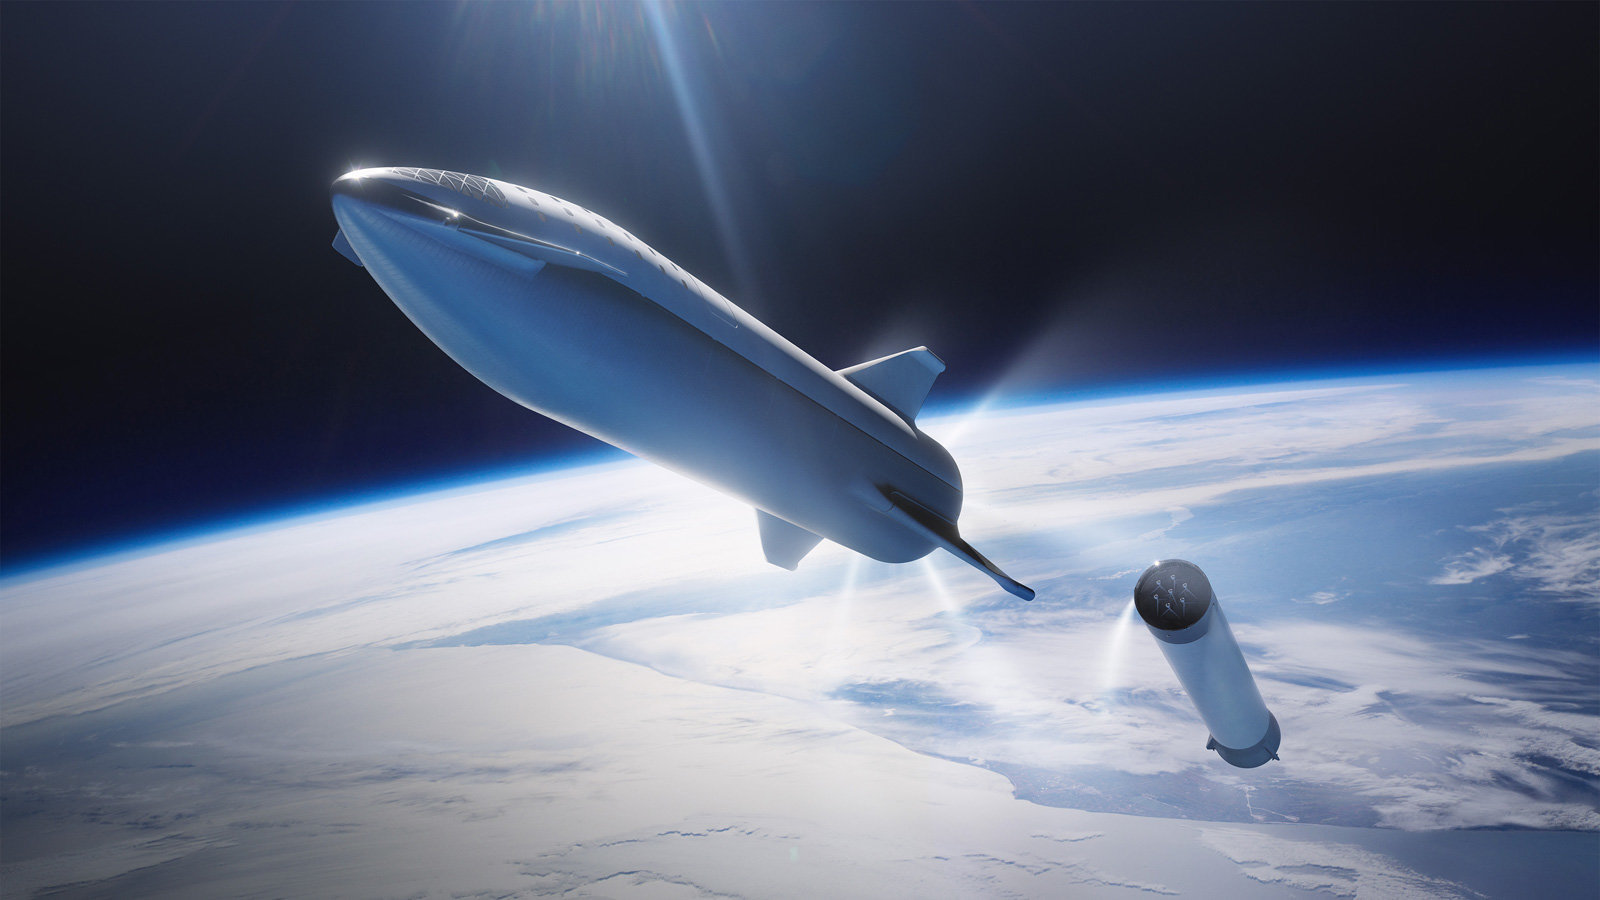 Starship, statek kosmiczny SpaceX, moe odlecie ju wiosn